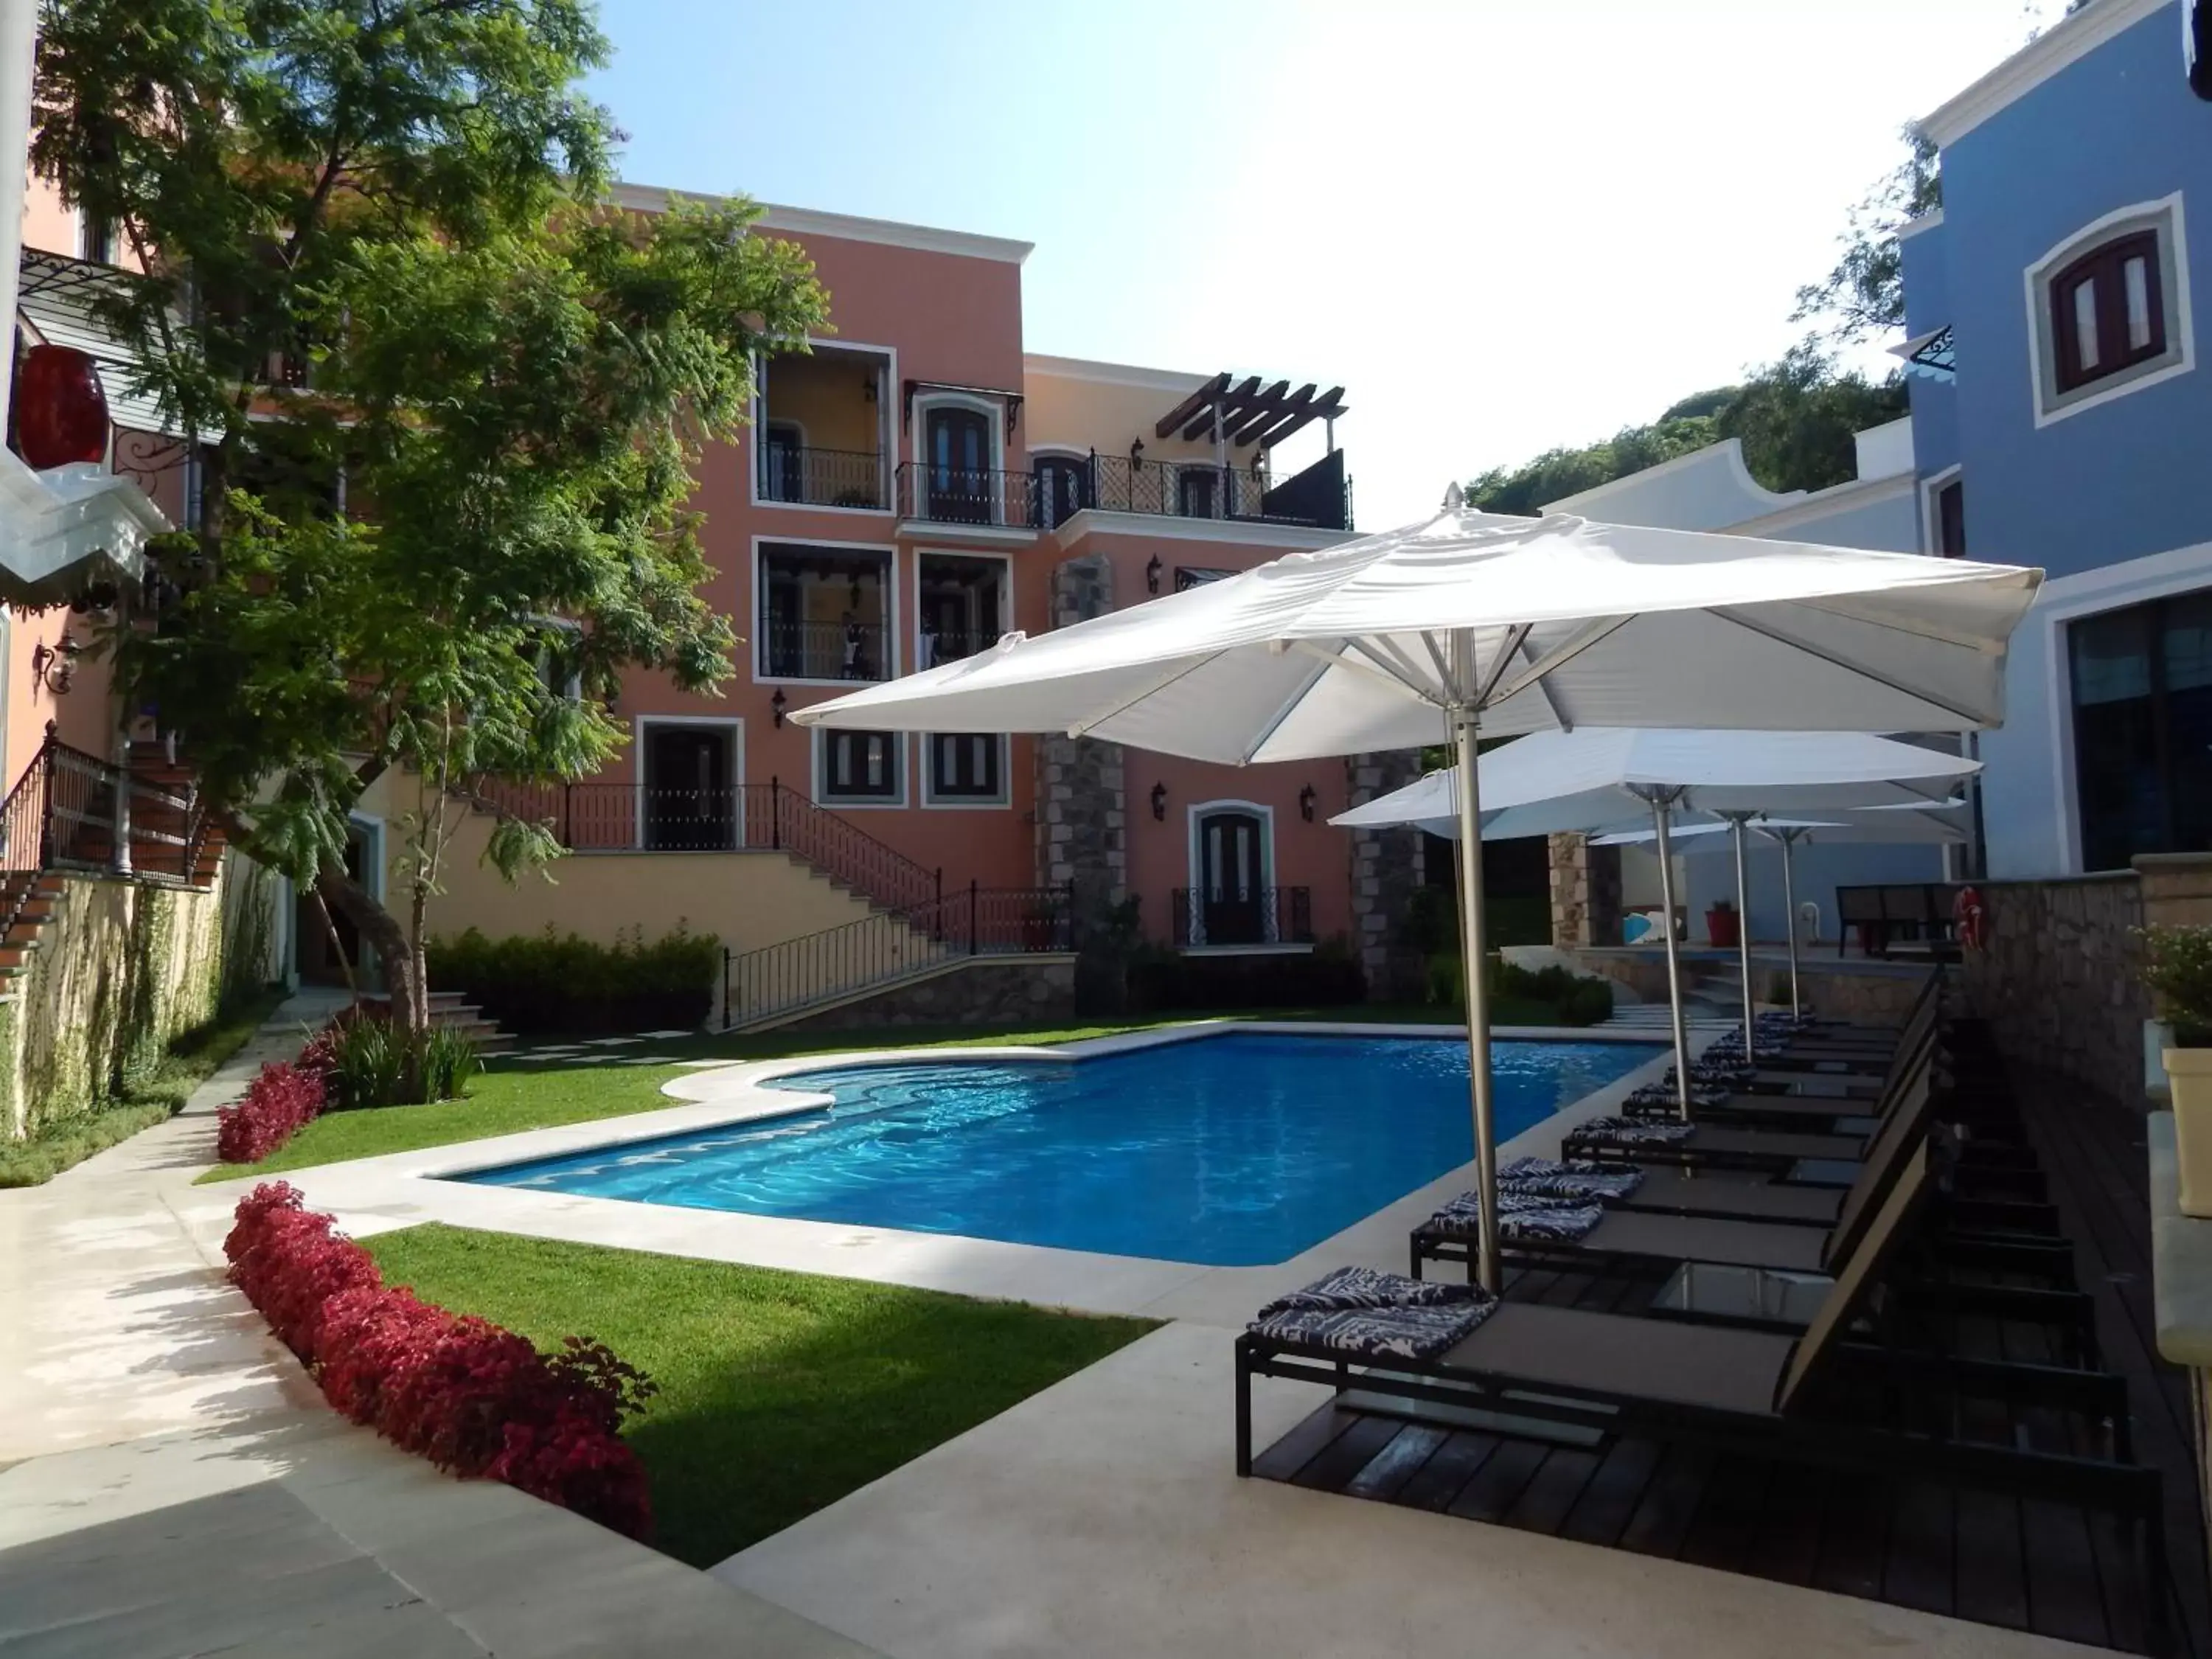 On site, Swimming Pool in Villa Maria Cristina Hotel